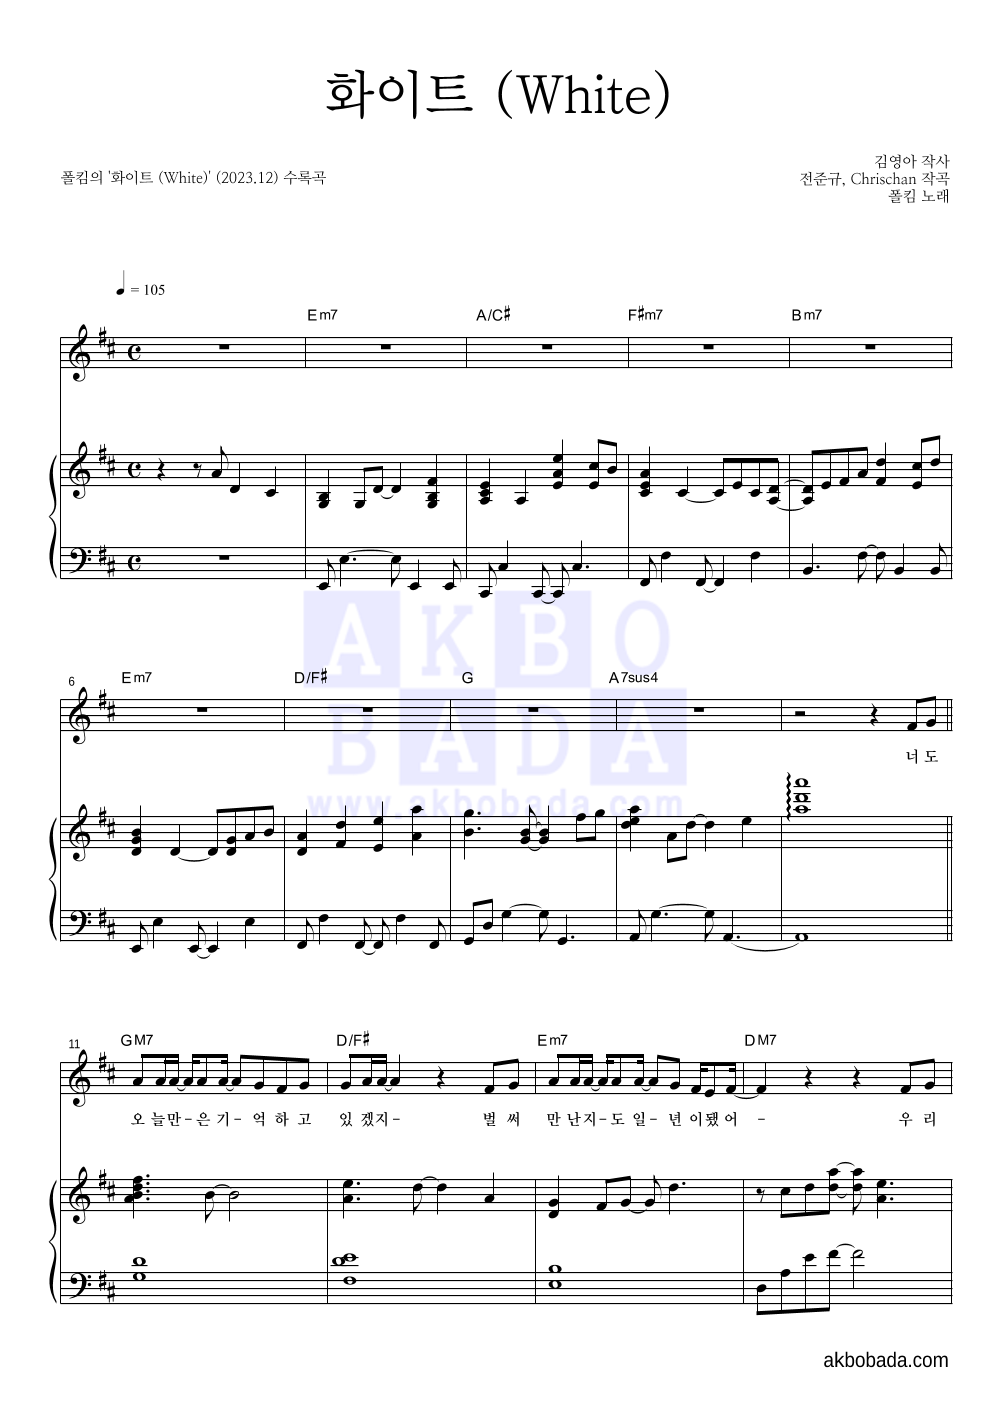 폴킴 - 화이트 (White) 피아노 3단 악보 